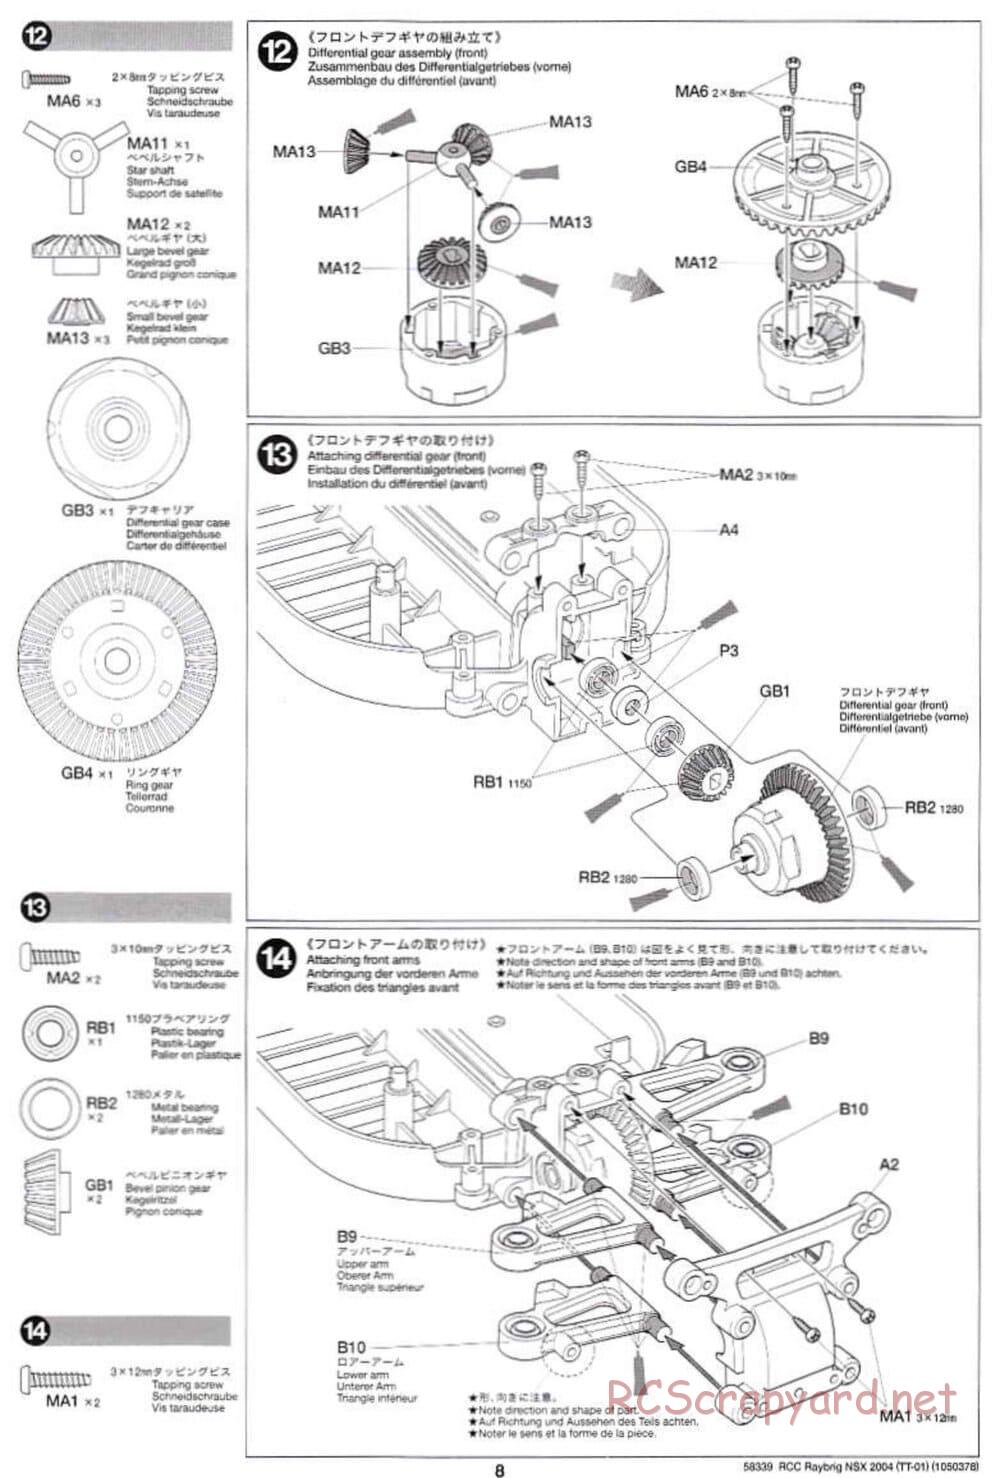 Tamiya - Raybrig NSX 2004 Chassis - Manual - Page 8